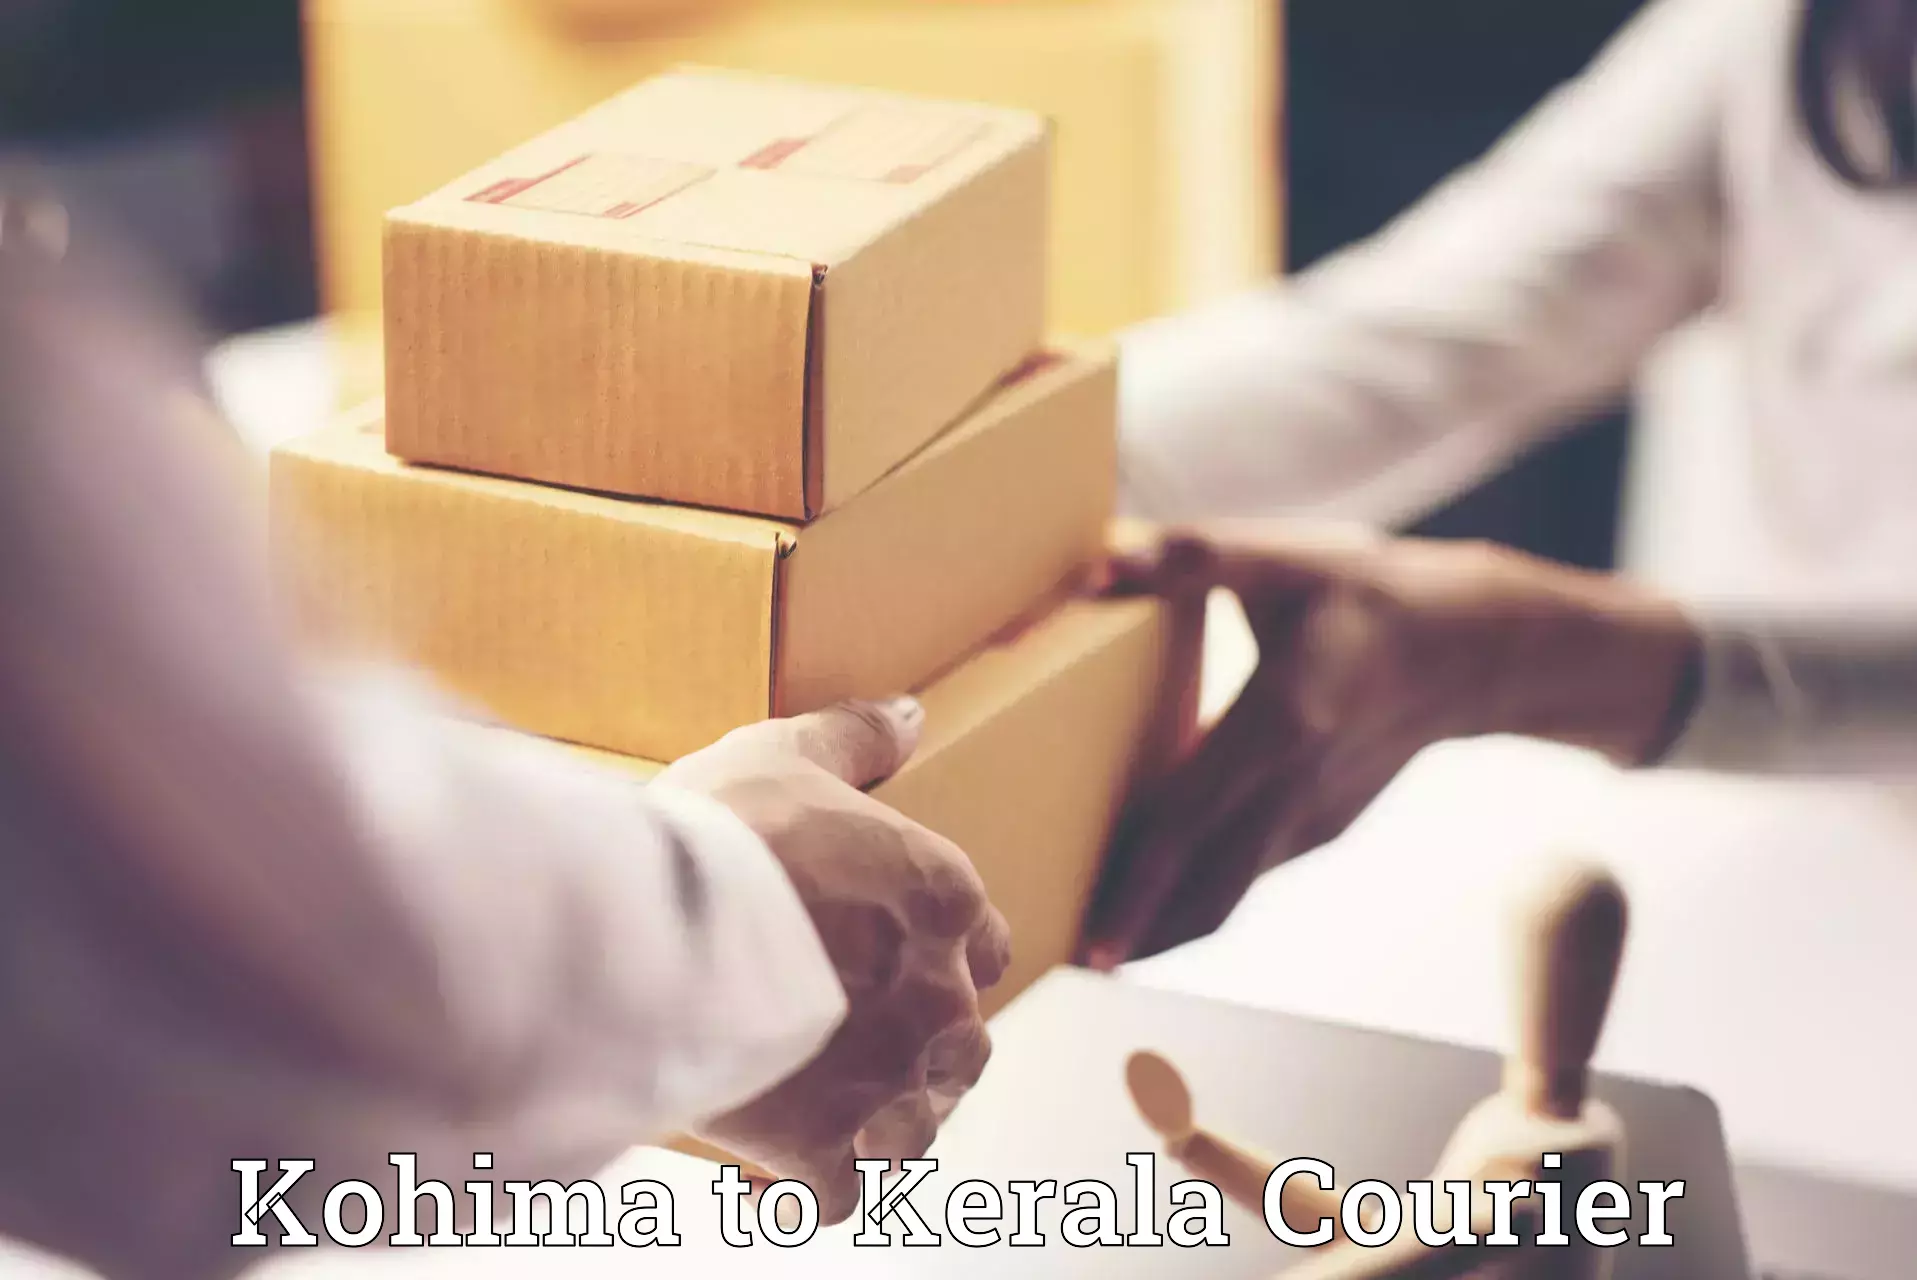 Efficient moving company Kohima to Kerala